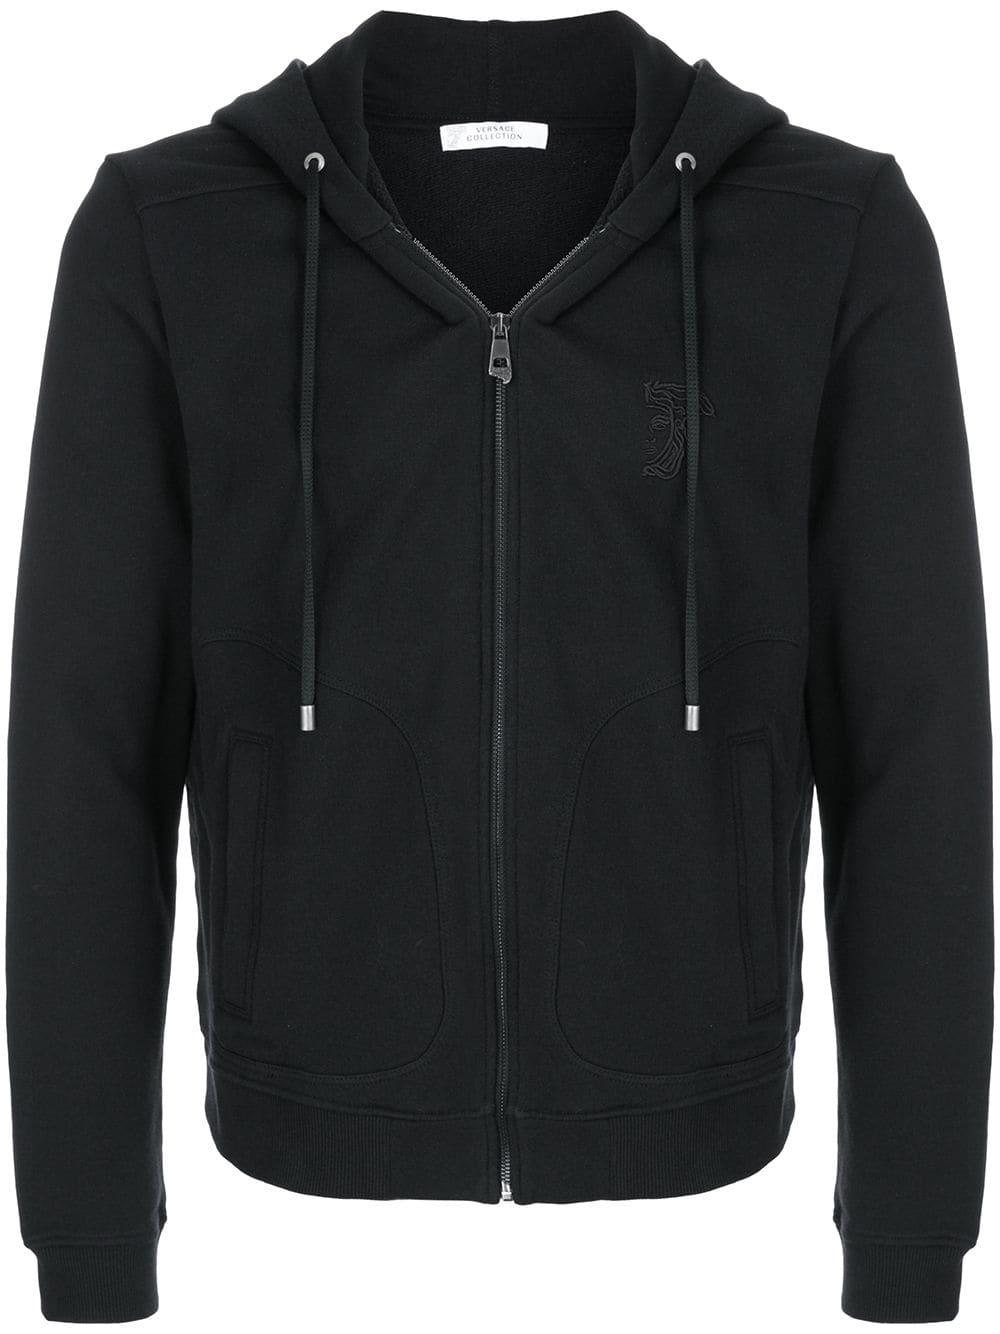 Versace Cotton Zip Front Hoodie in Black for Men - Lyst